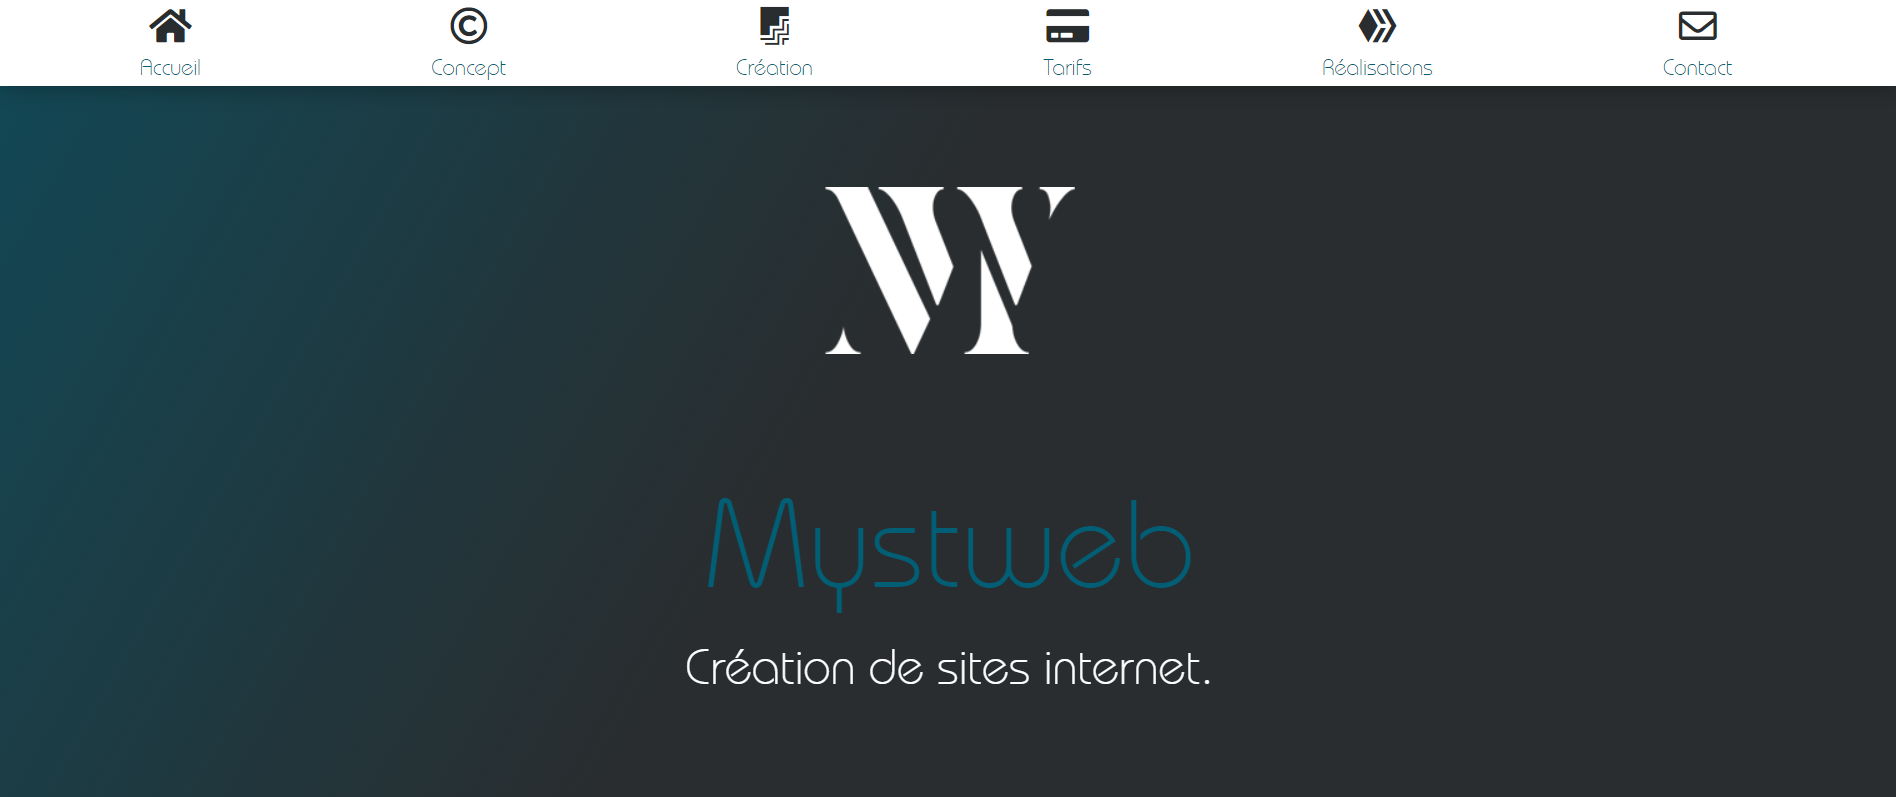 MystWEB - Création de sites internet en Ariège - Agence Web à Foix